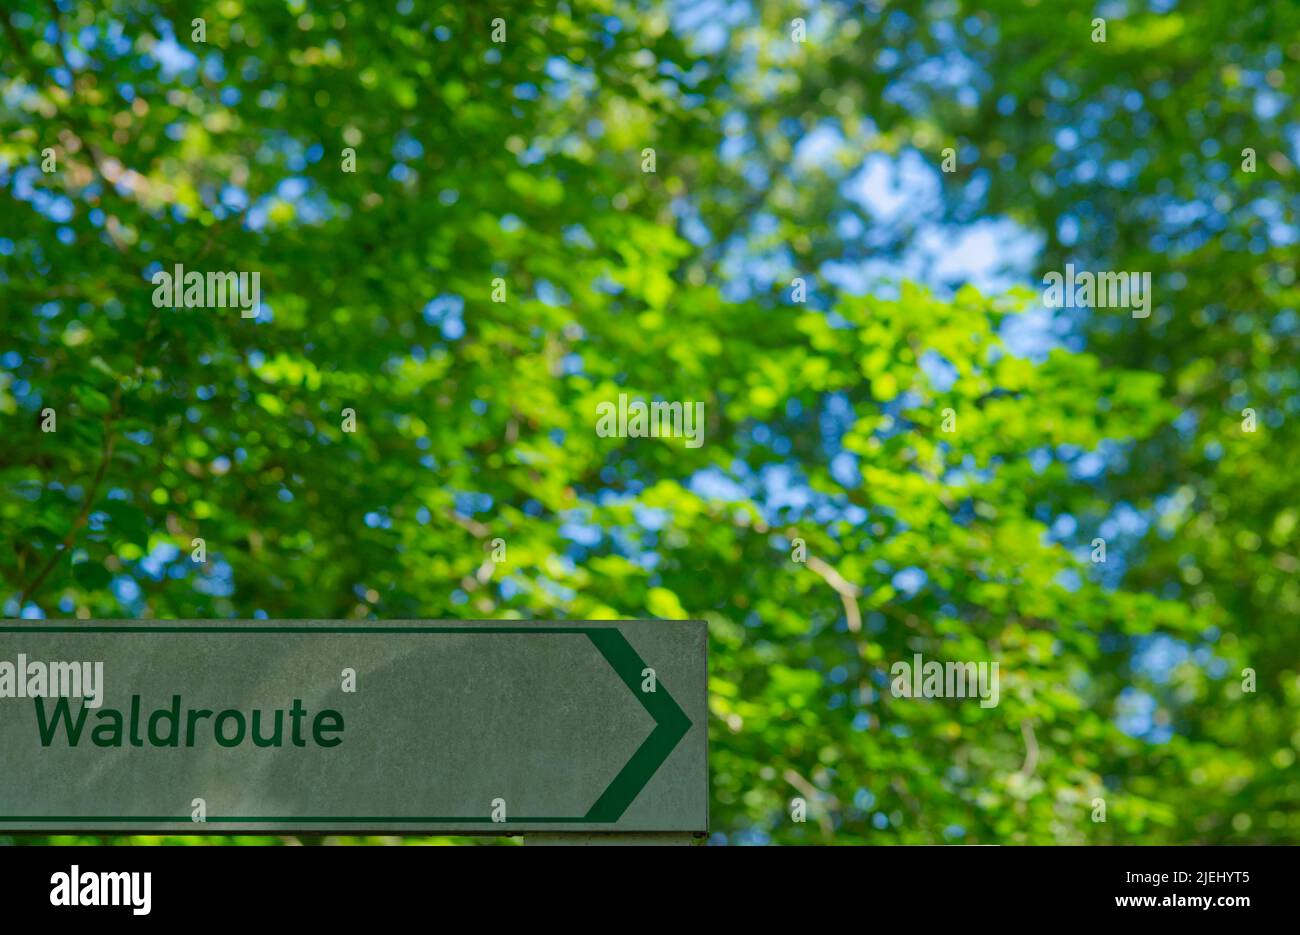 Cartello con scritto 'Waldroute' (tedesco per 'percorso verso la foresta') in basso a sinistra e foglie verdi Foto Stock